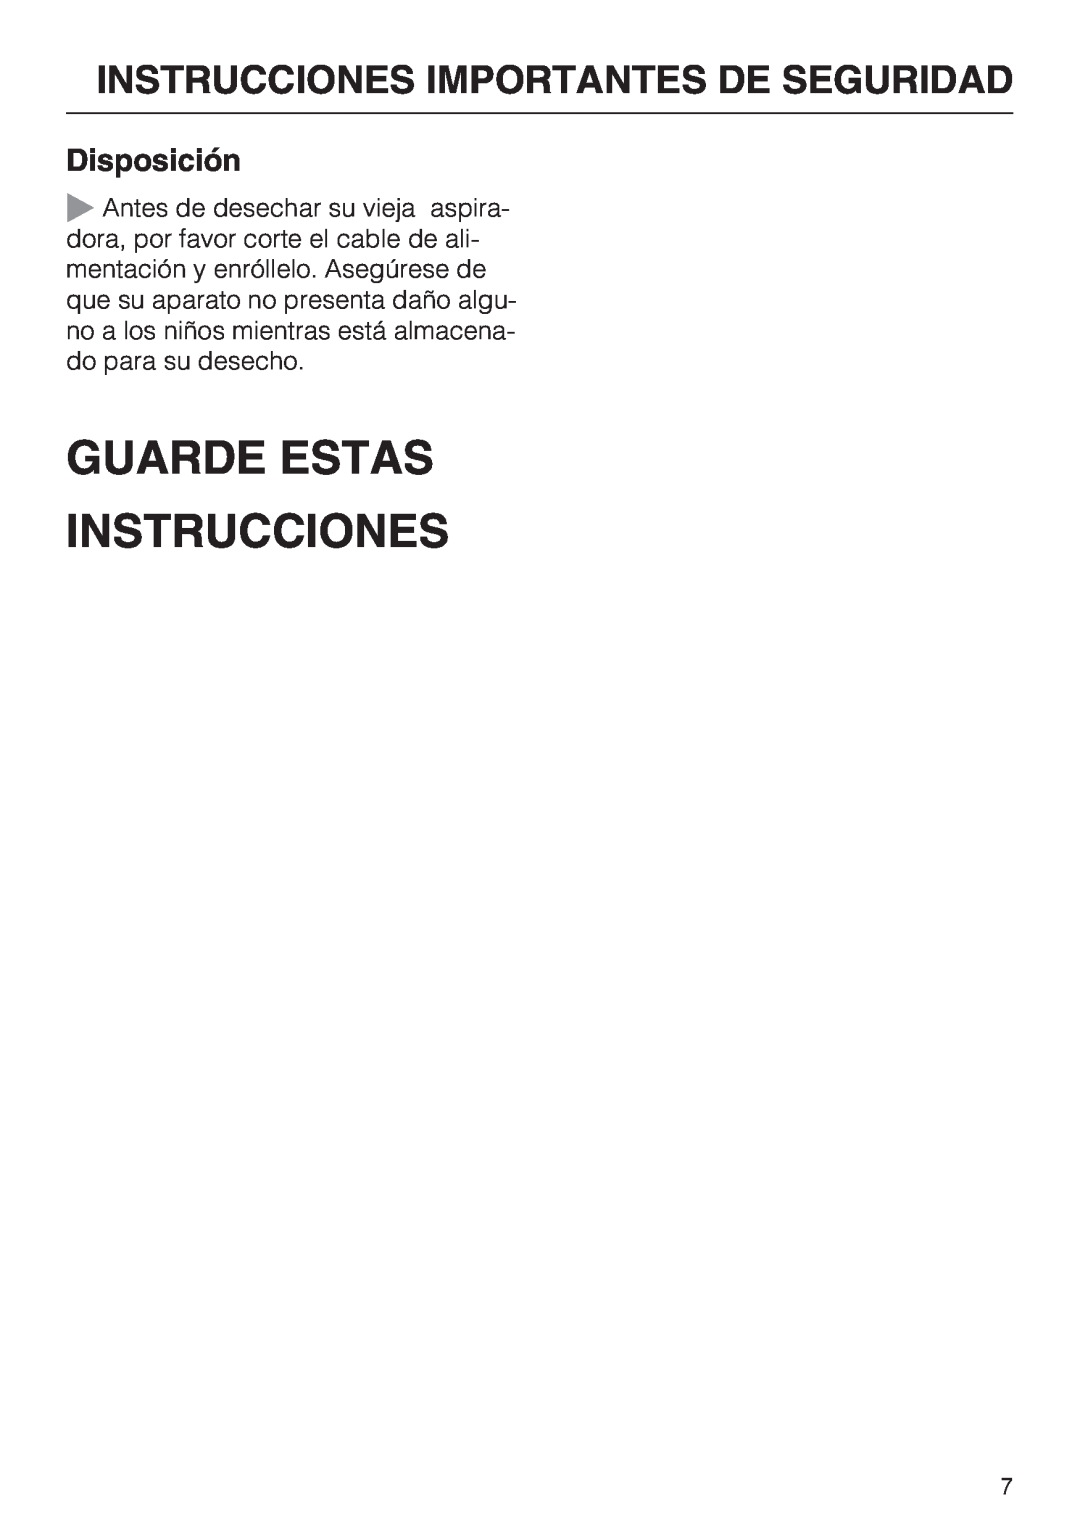 Miele HS12, S 2000, S 2120 manual Guarde Estas Instrucciones, Disposición, Instrucciones Importantes De Seguridad 